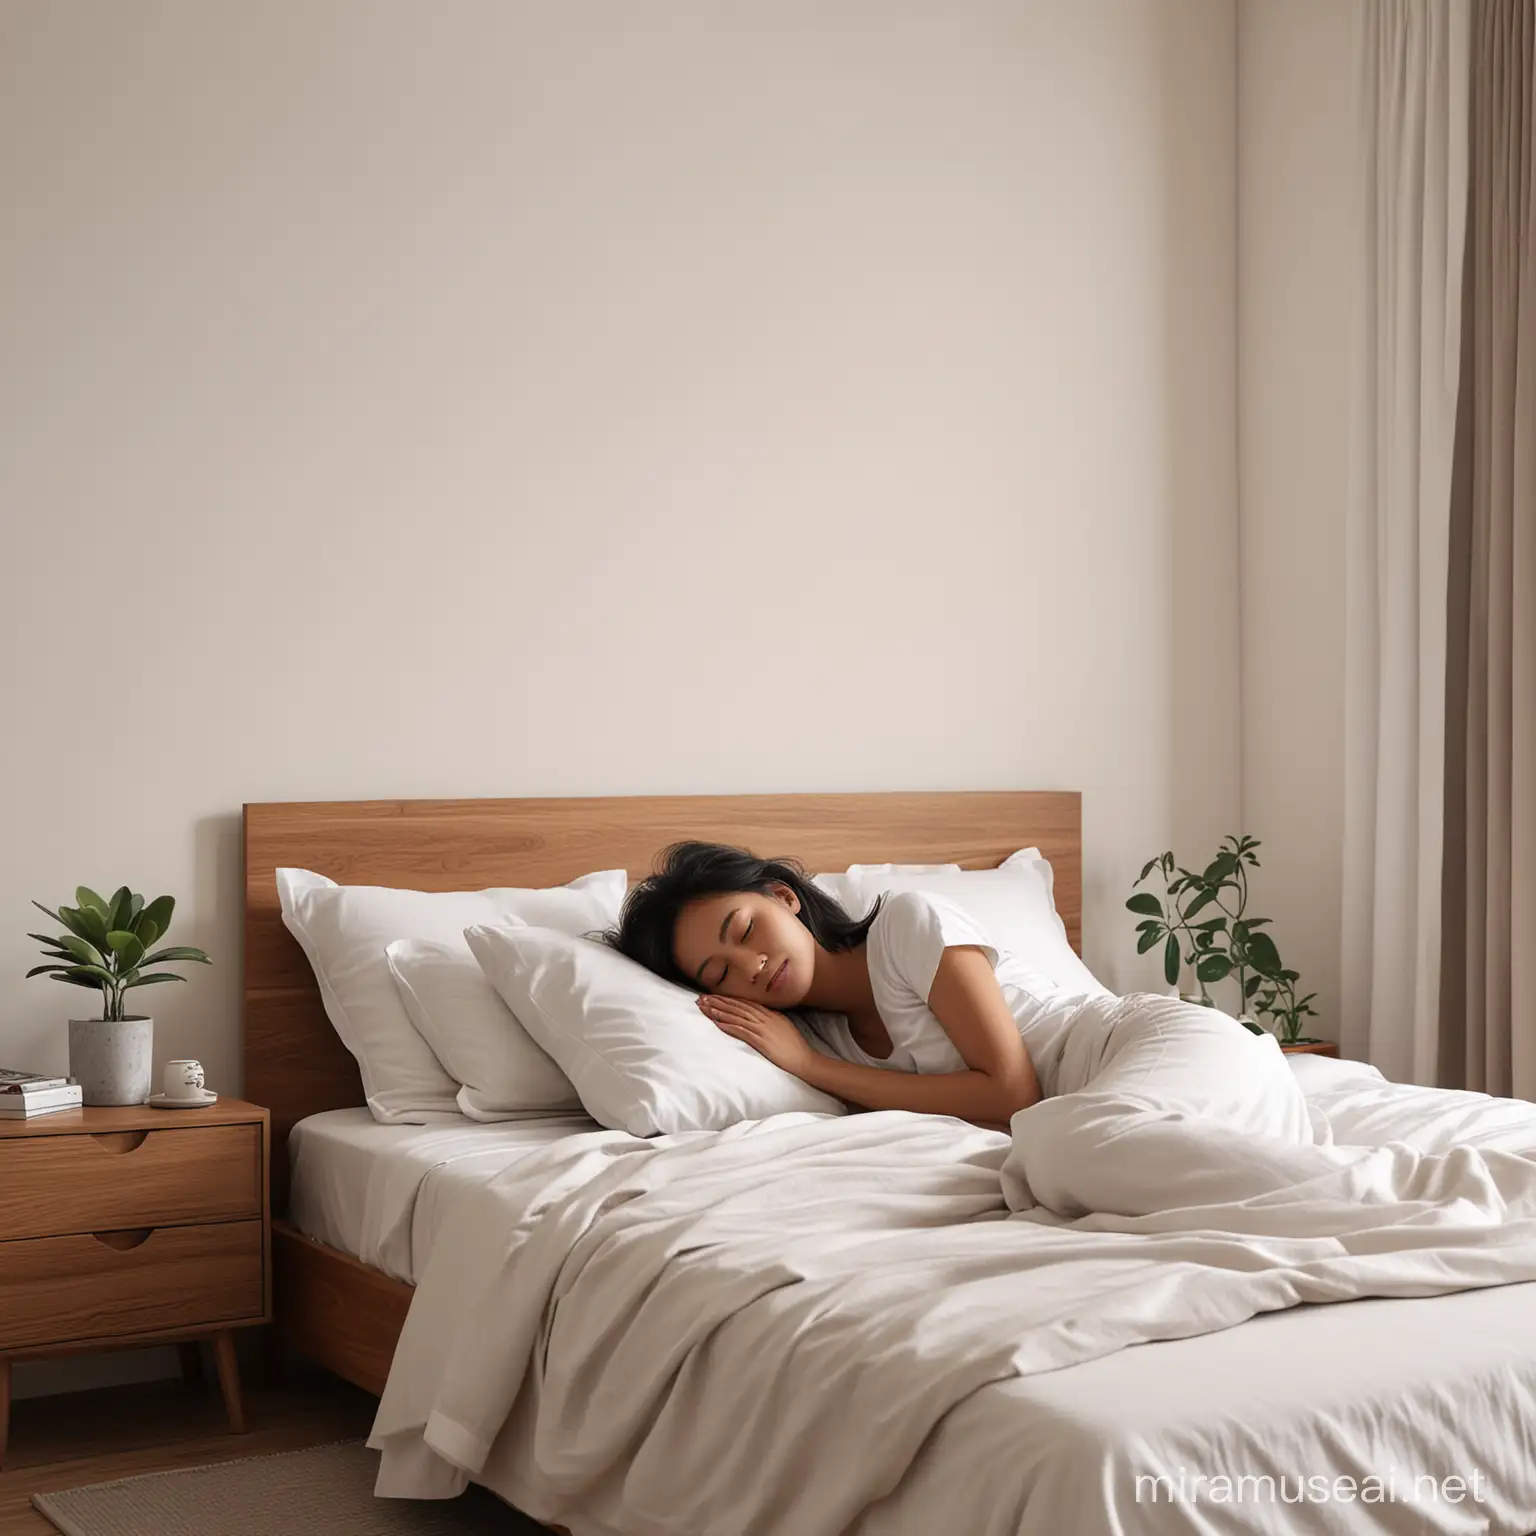 Comfortable Sleep Realistic Young Indonesian Girl in Minimalist Bedroom